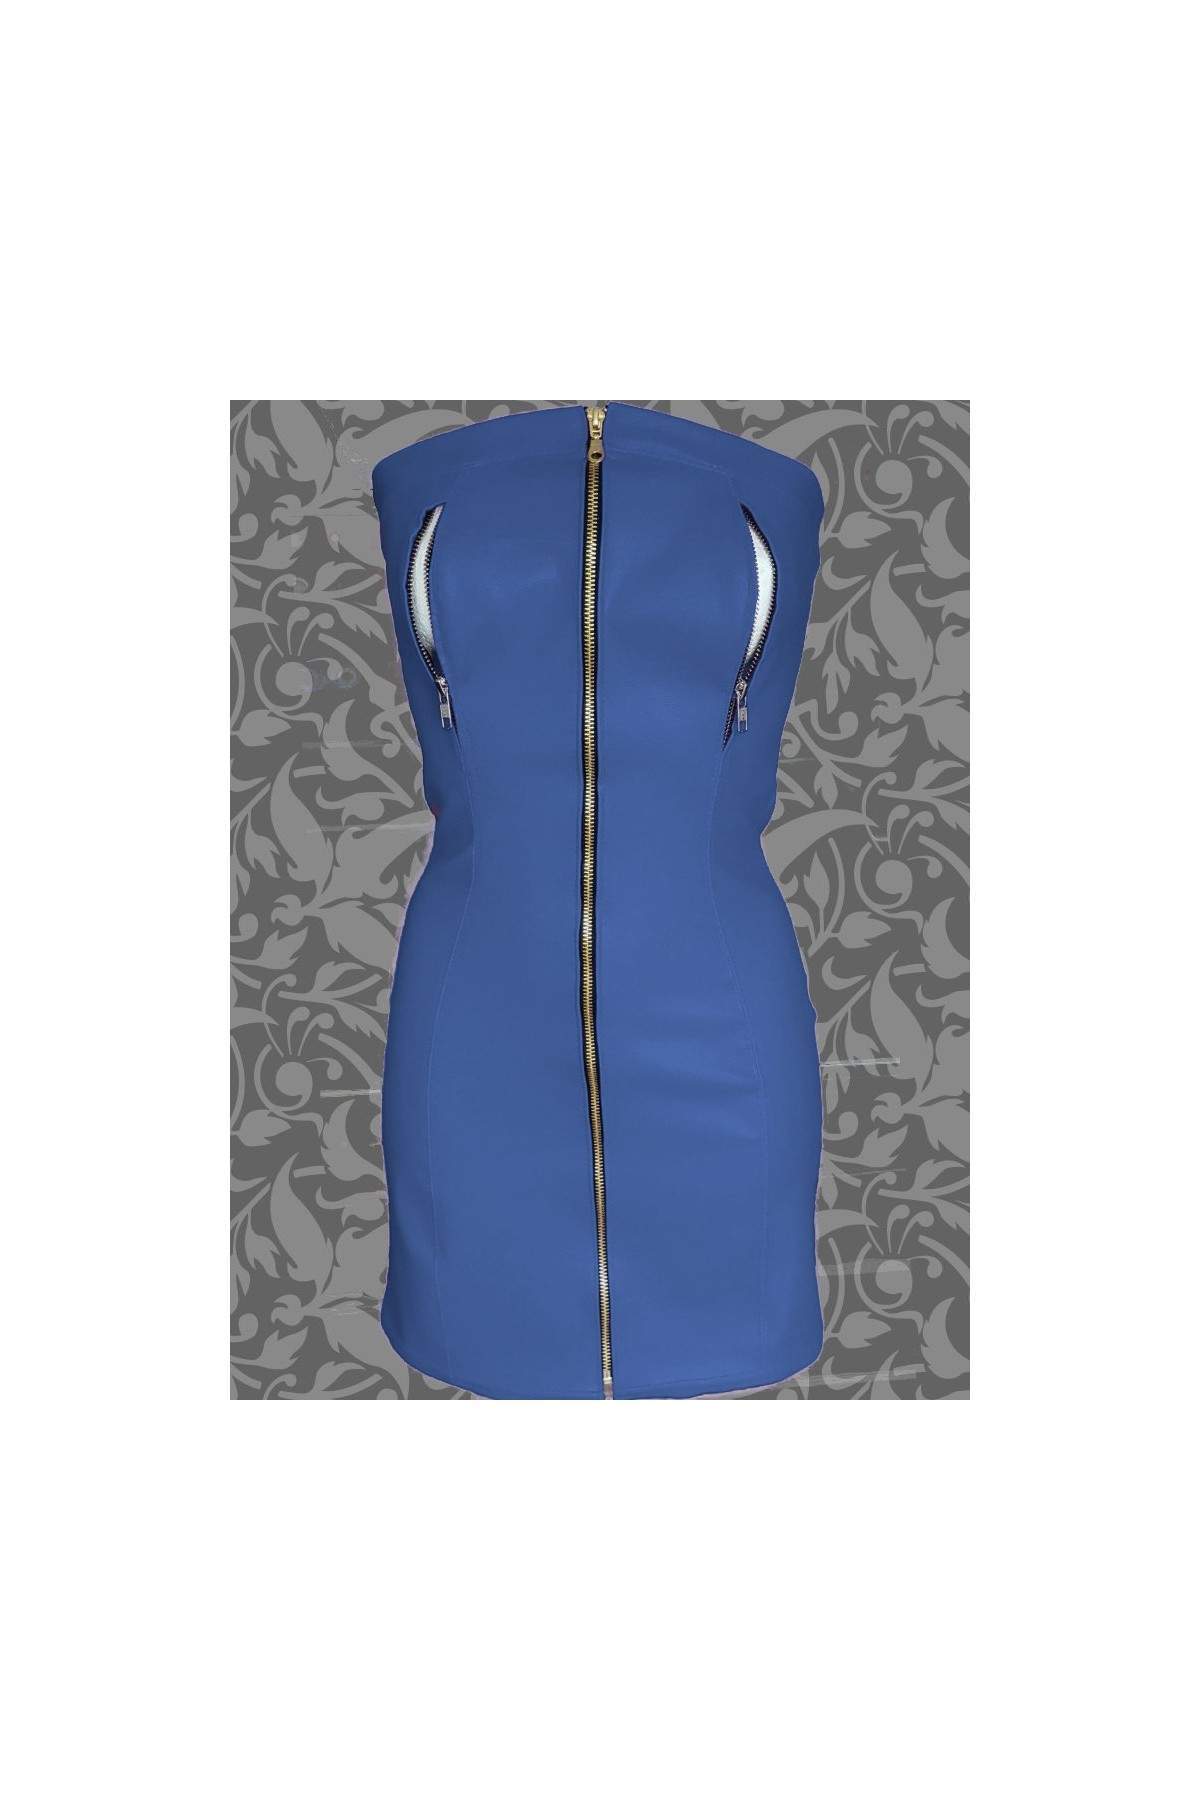 FGirth Nippelfrei Softleder Kleid blau mit Reißverschlüssen - 